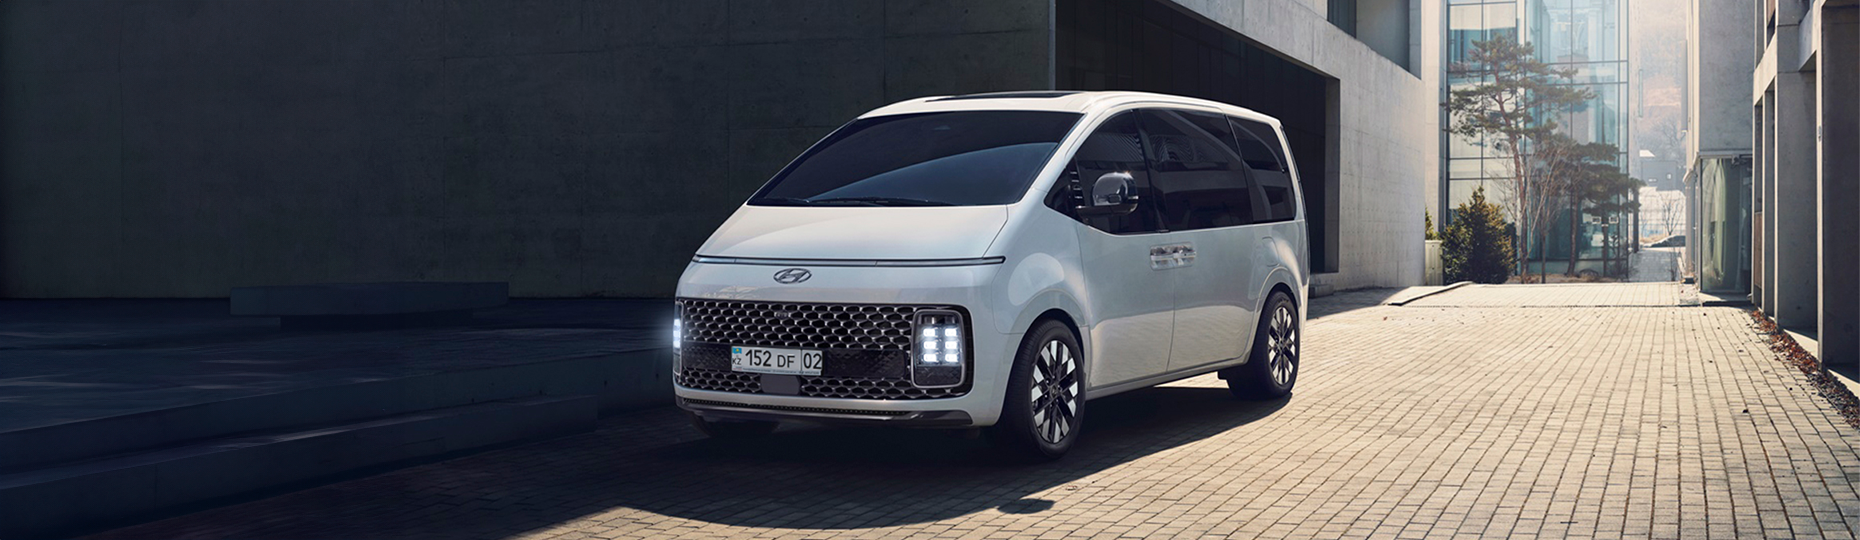 Производительность нового Hyundai Staria | Официальный дилер в Астане